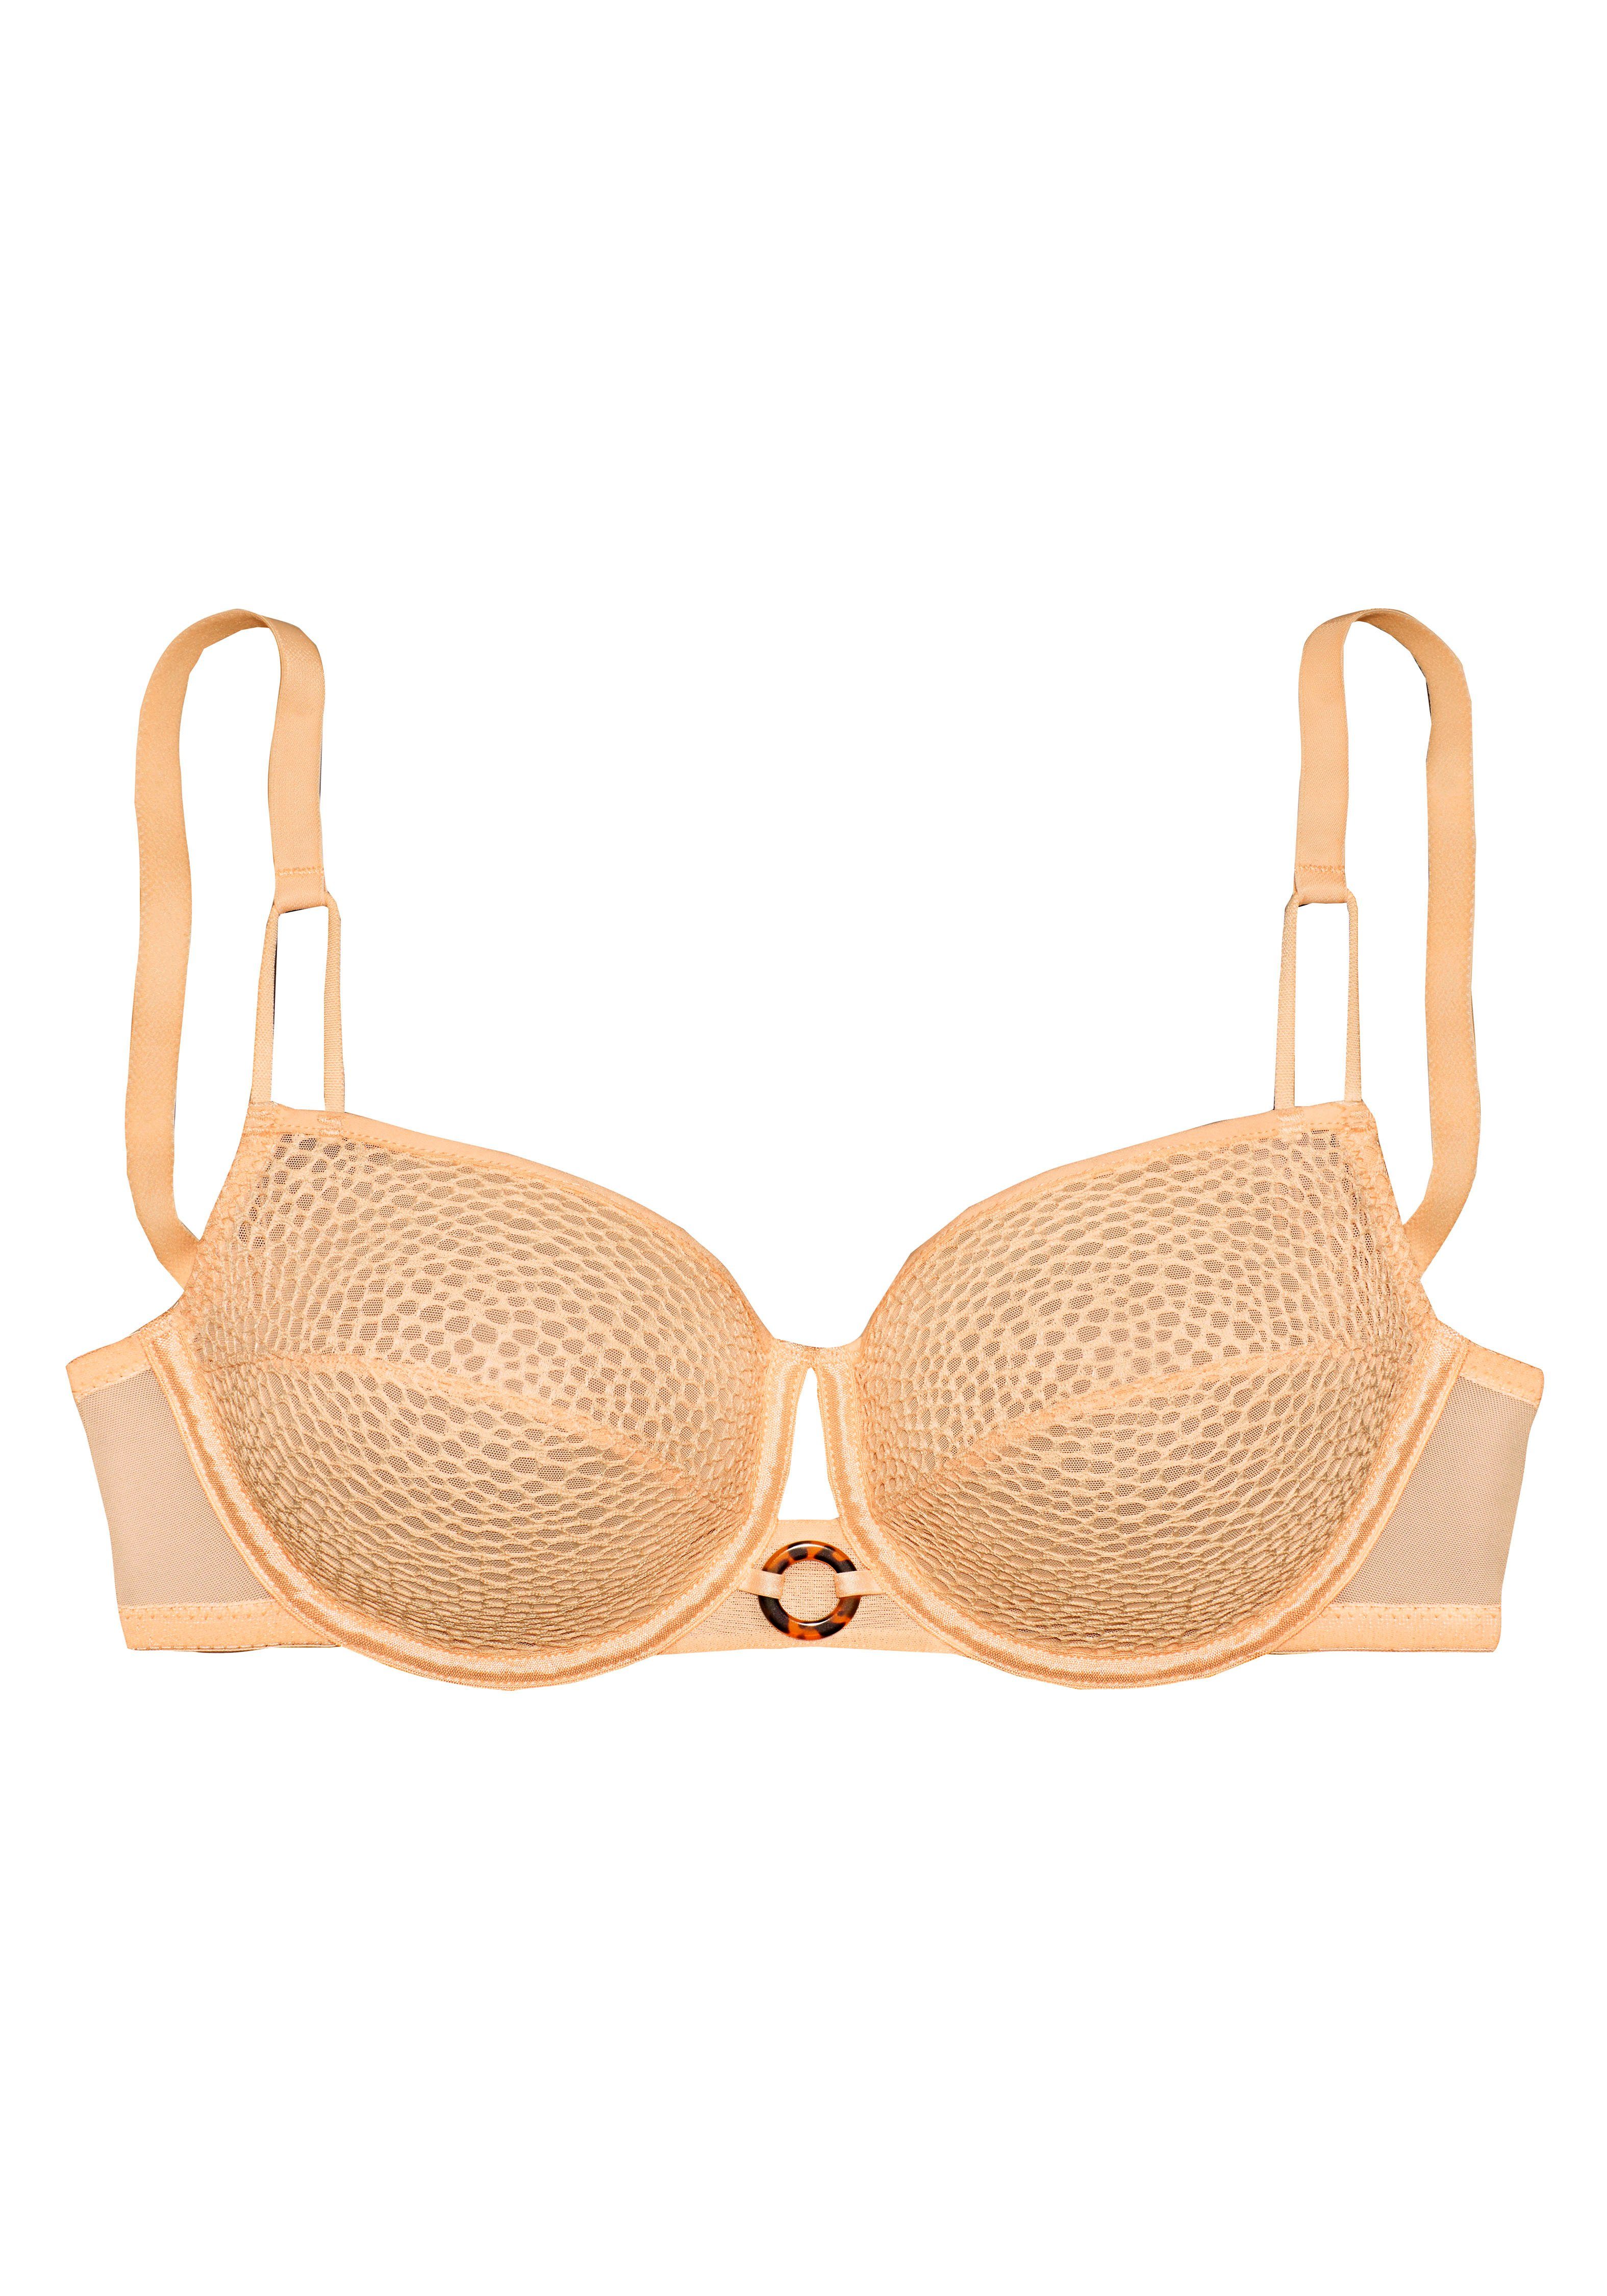 Lascana Beugel-bh met mesh kant in koraal-look en elegante ring accessoire lingerie